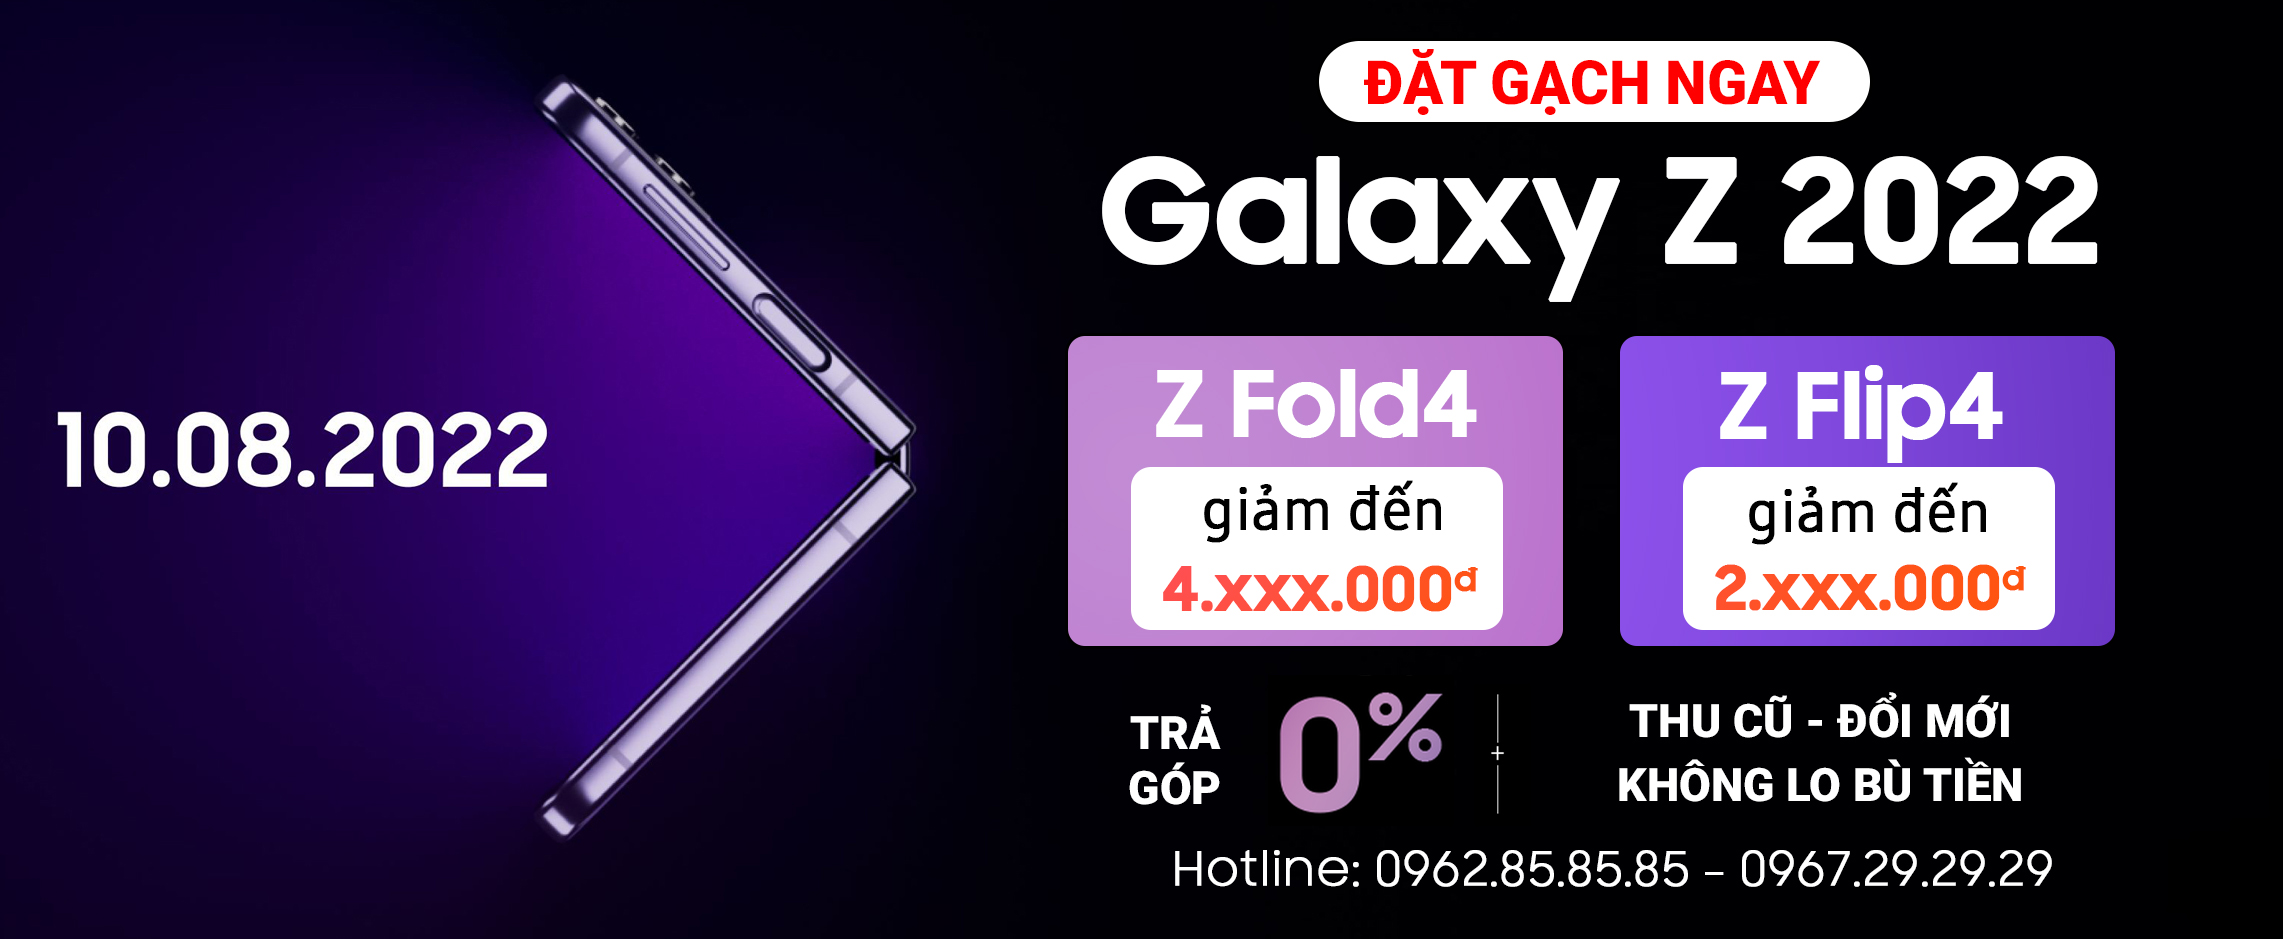 Đặt trước Galaxy Z Fold4 5G